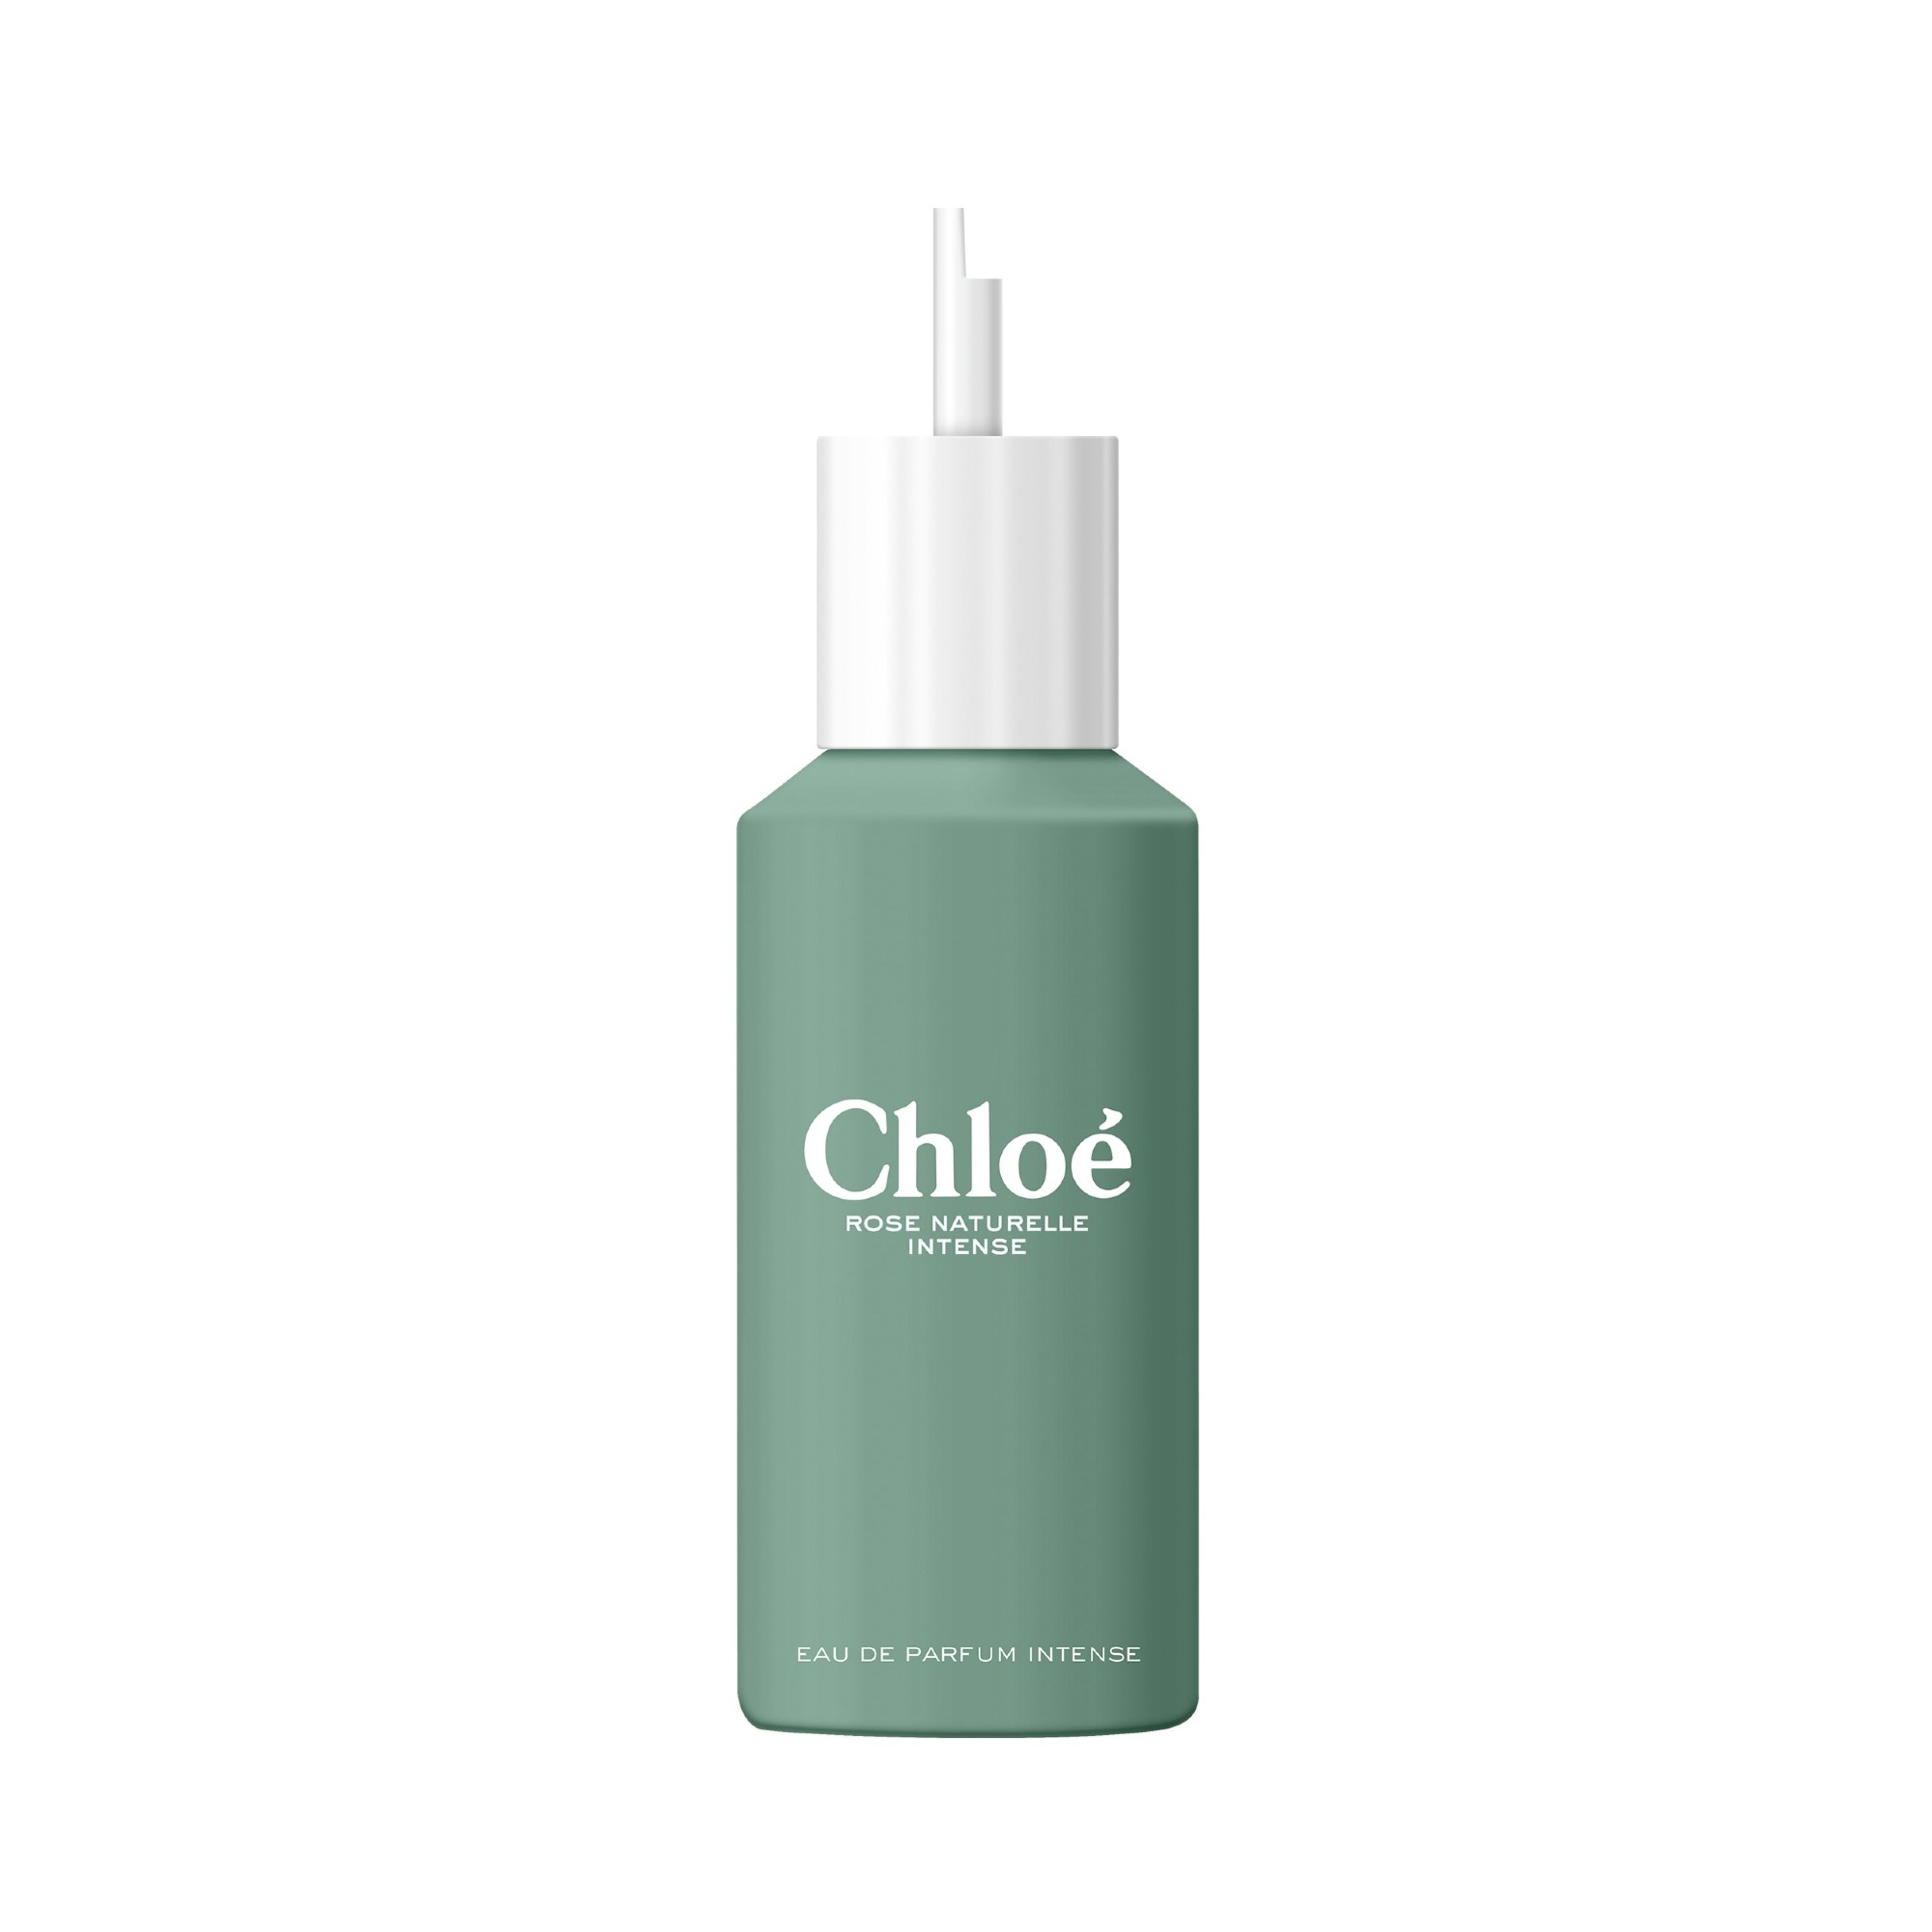 Chloé Chloé Eau De Parfum Intense Rose Naturelle Intense - Ricarica 2